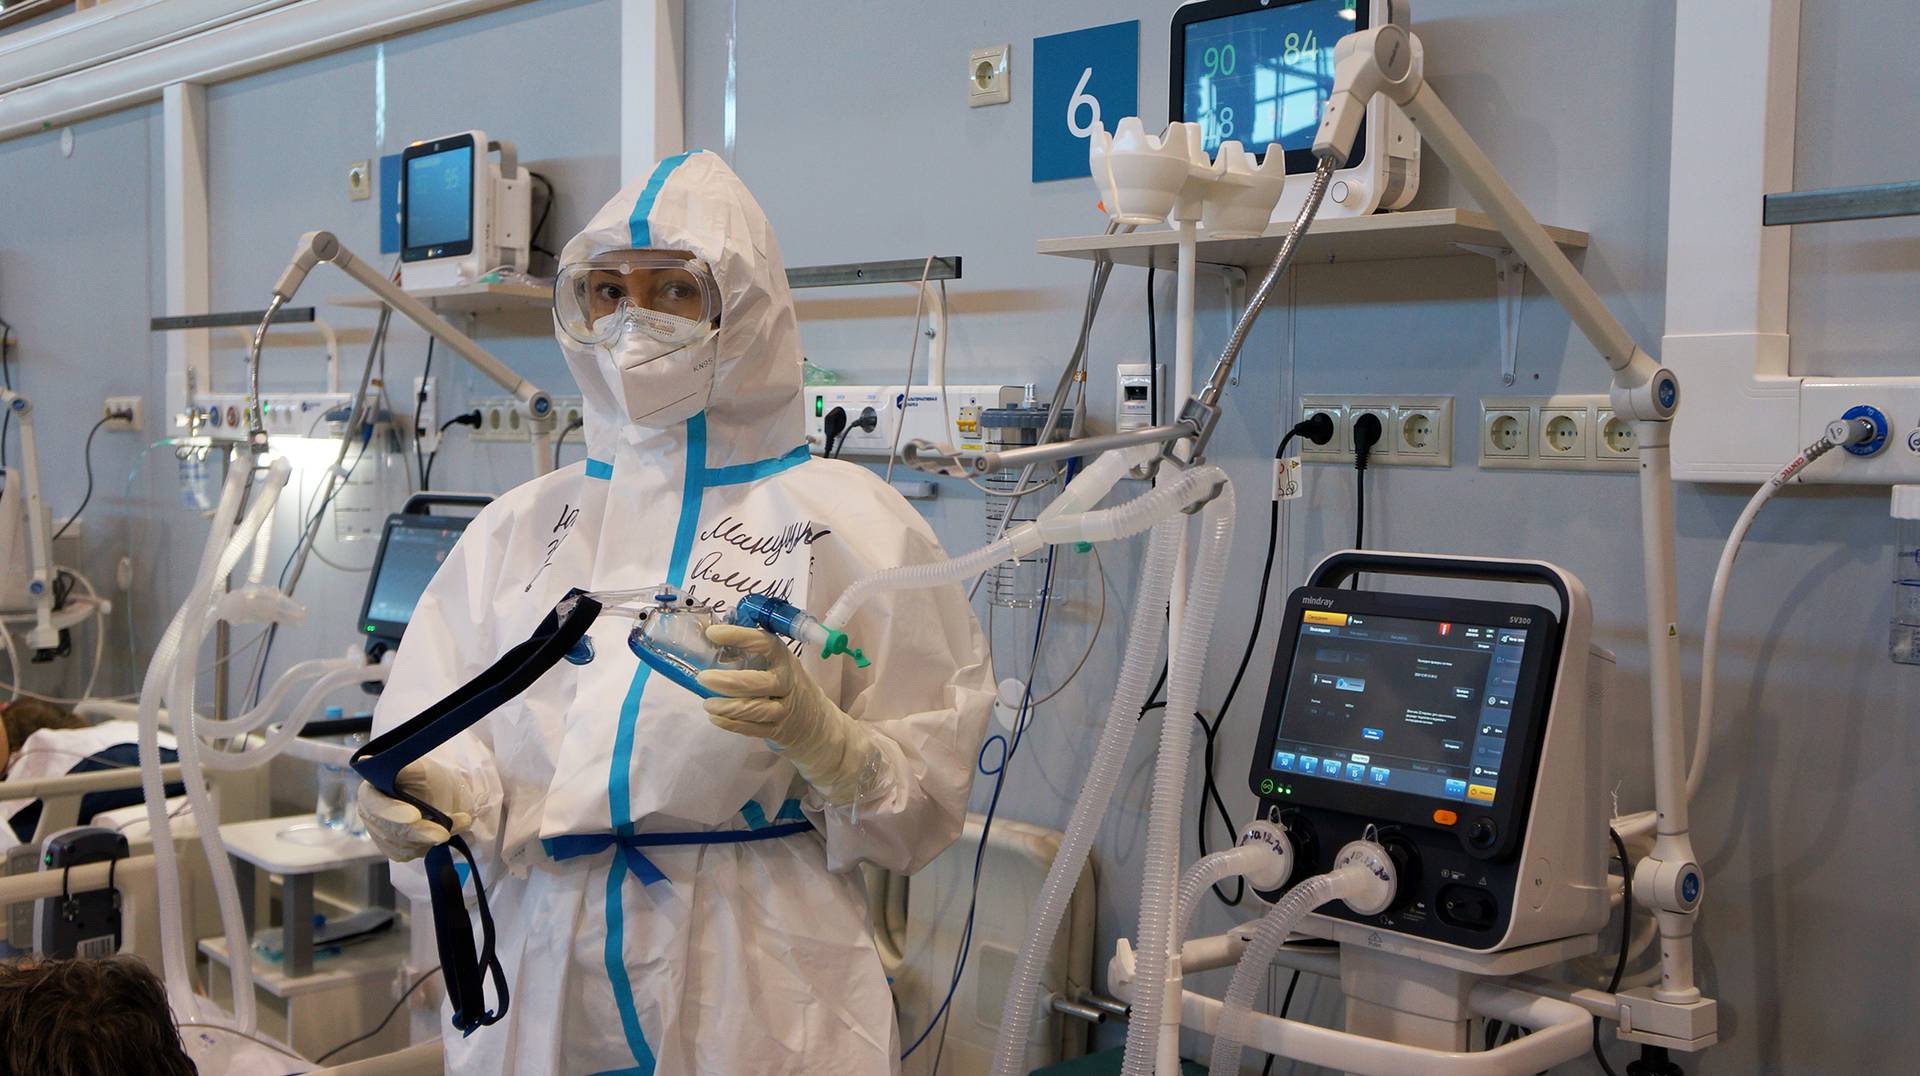 Неинвазивная кислородная маска. Реанимационный блок «Юг» госпиталя ГКБ 24 на ВДНХ